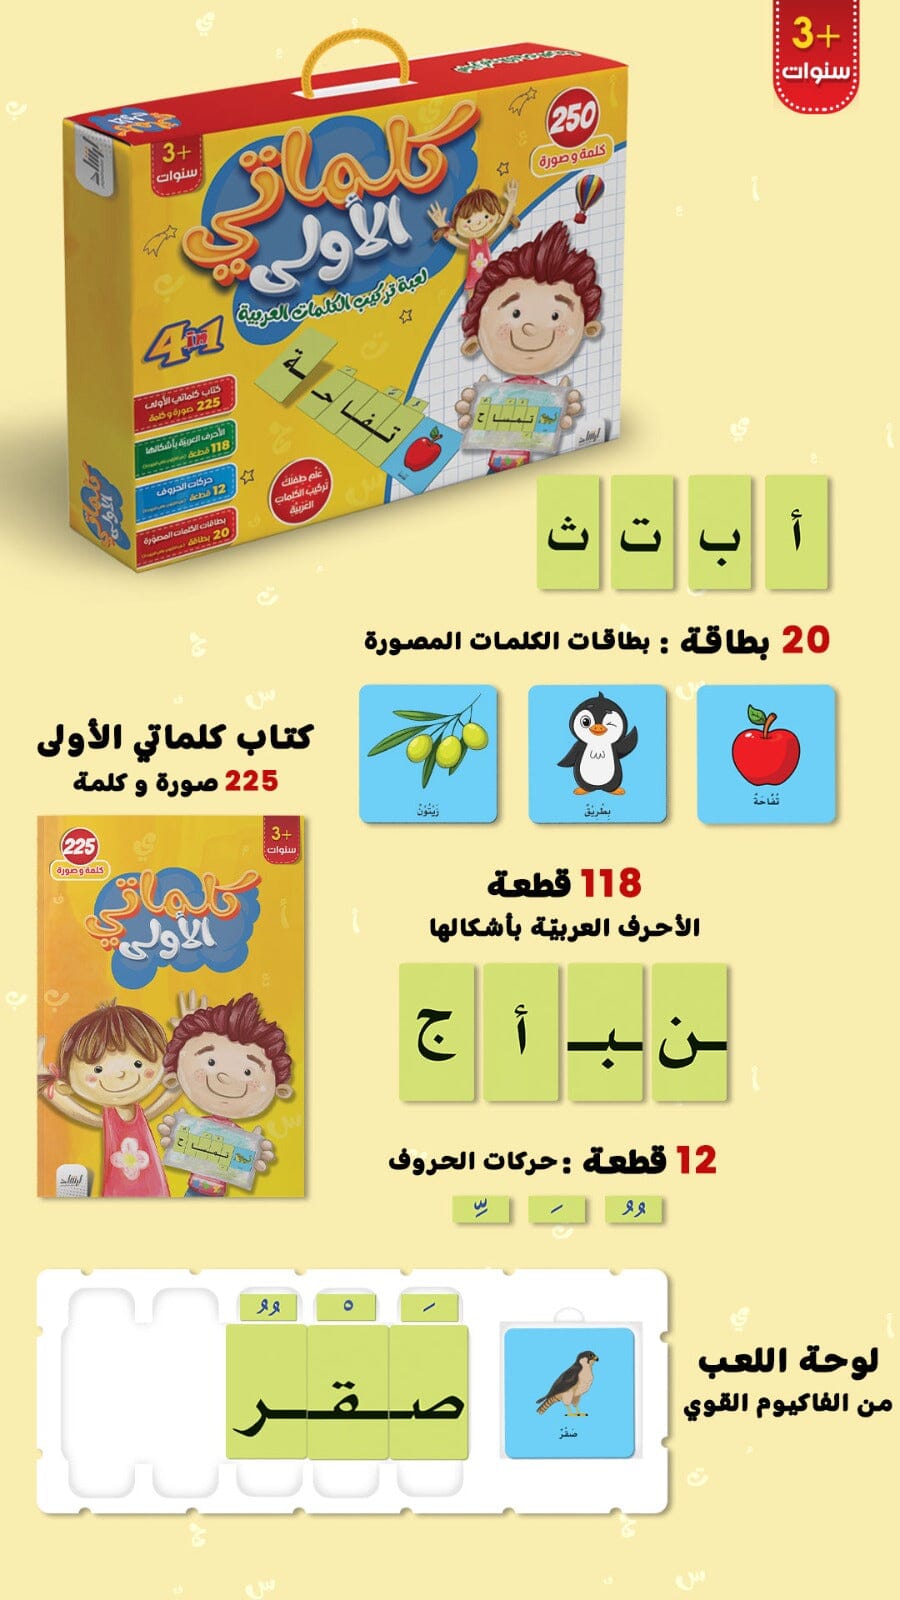 كلماتي الأولى : لعبة تركيب الكلمات العربية كتب أطفال دار الإرشاد للنشر والتوزيع 